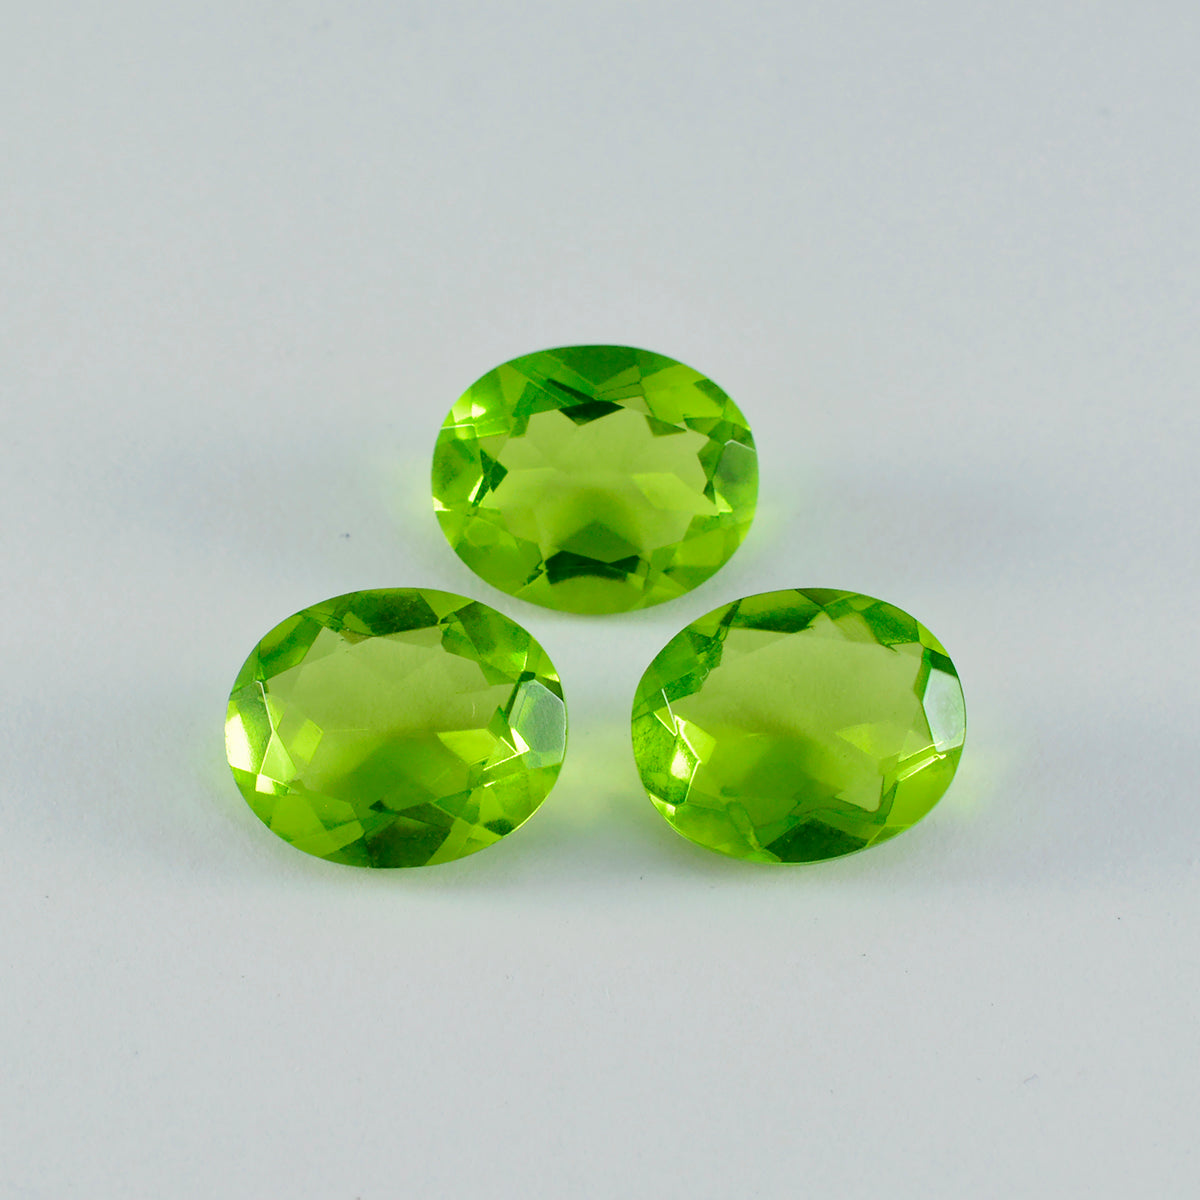 riyogems 1 шт. зеленый перидот cz граненый 12x16 мм овальной формы красивый качественный свободный драгоценный камень